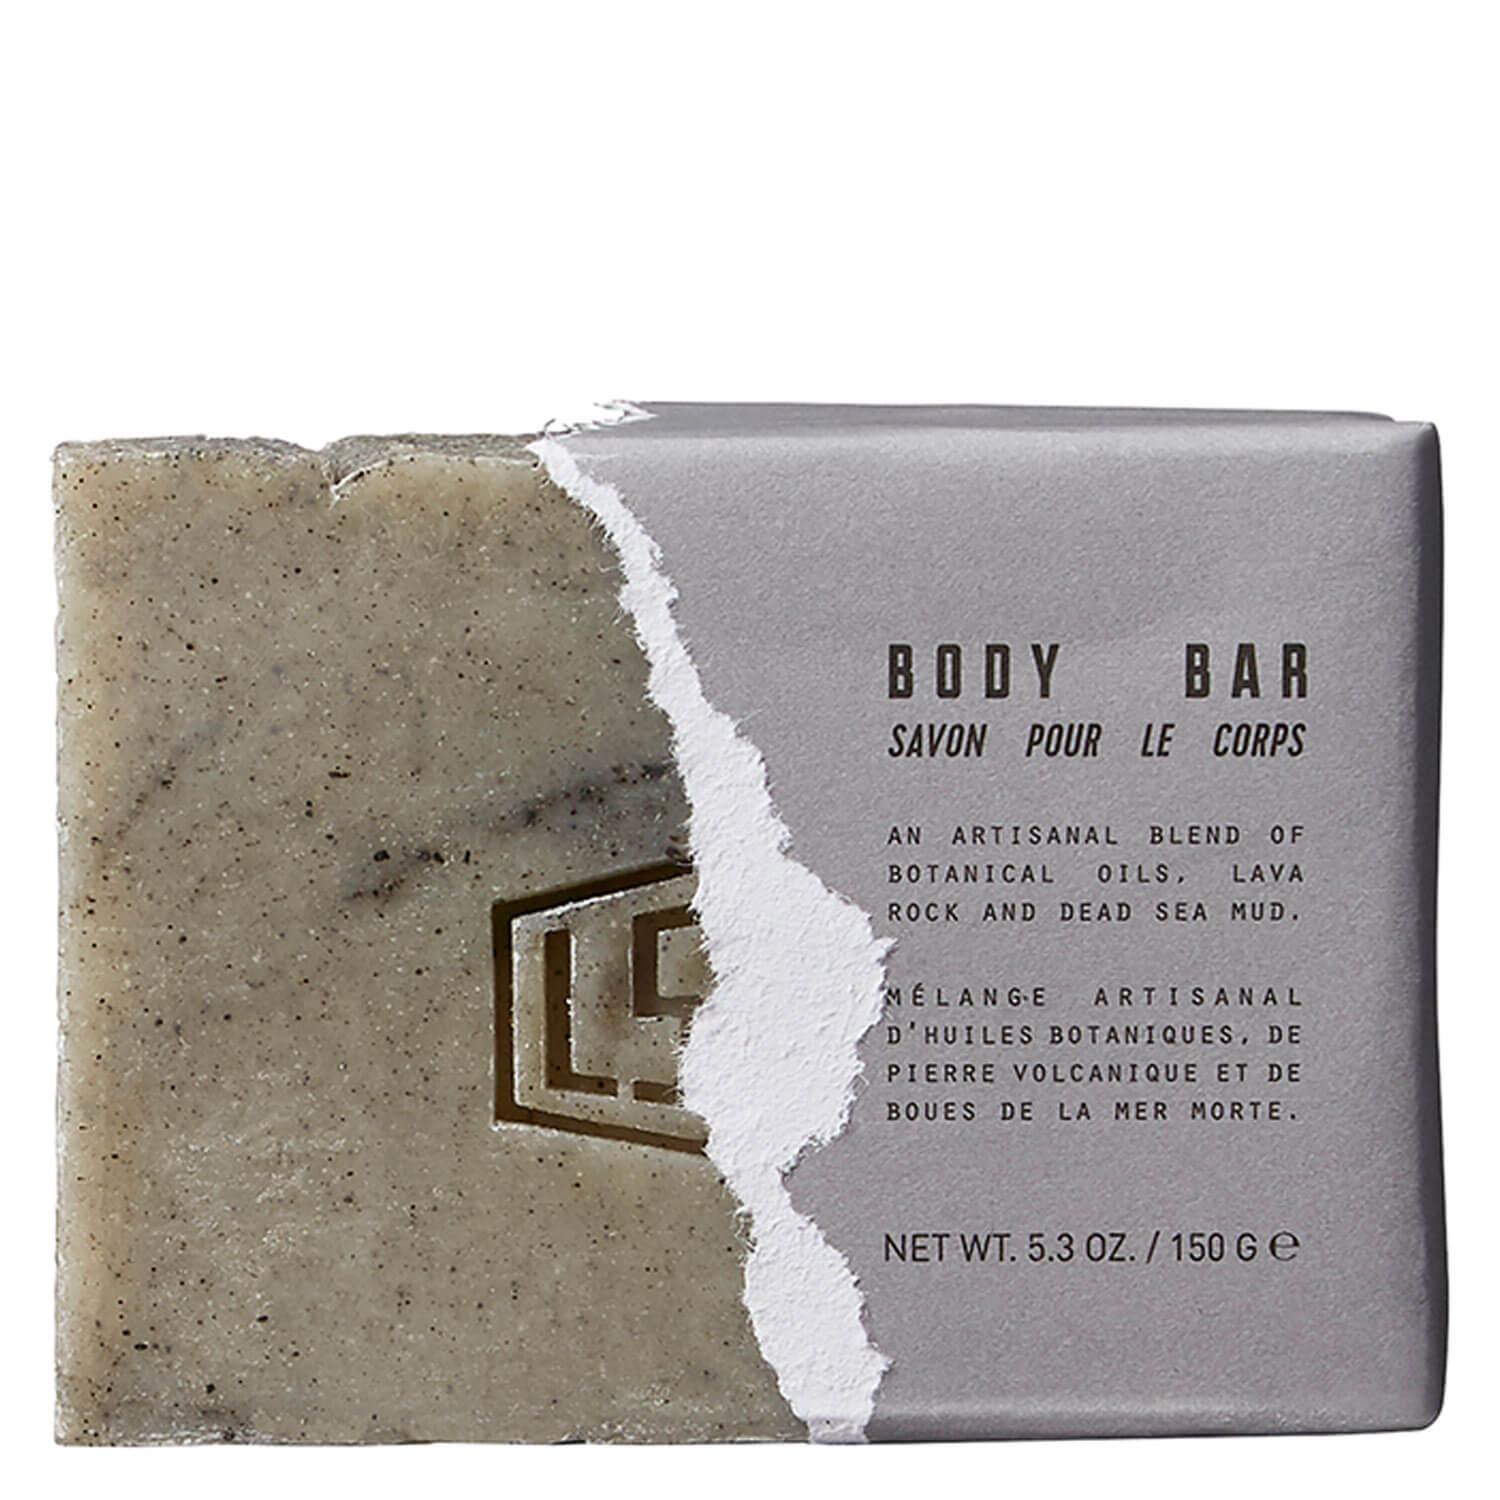 LS&B Original Blends - Body Bar